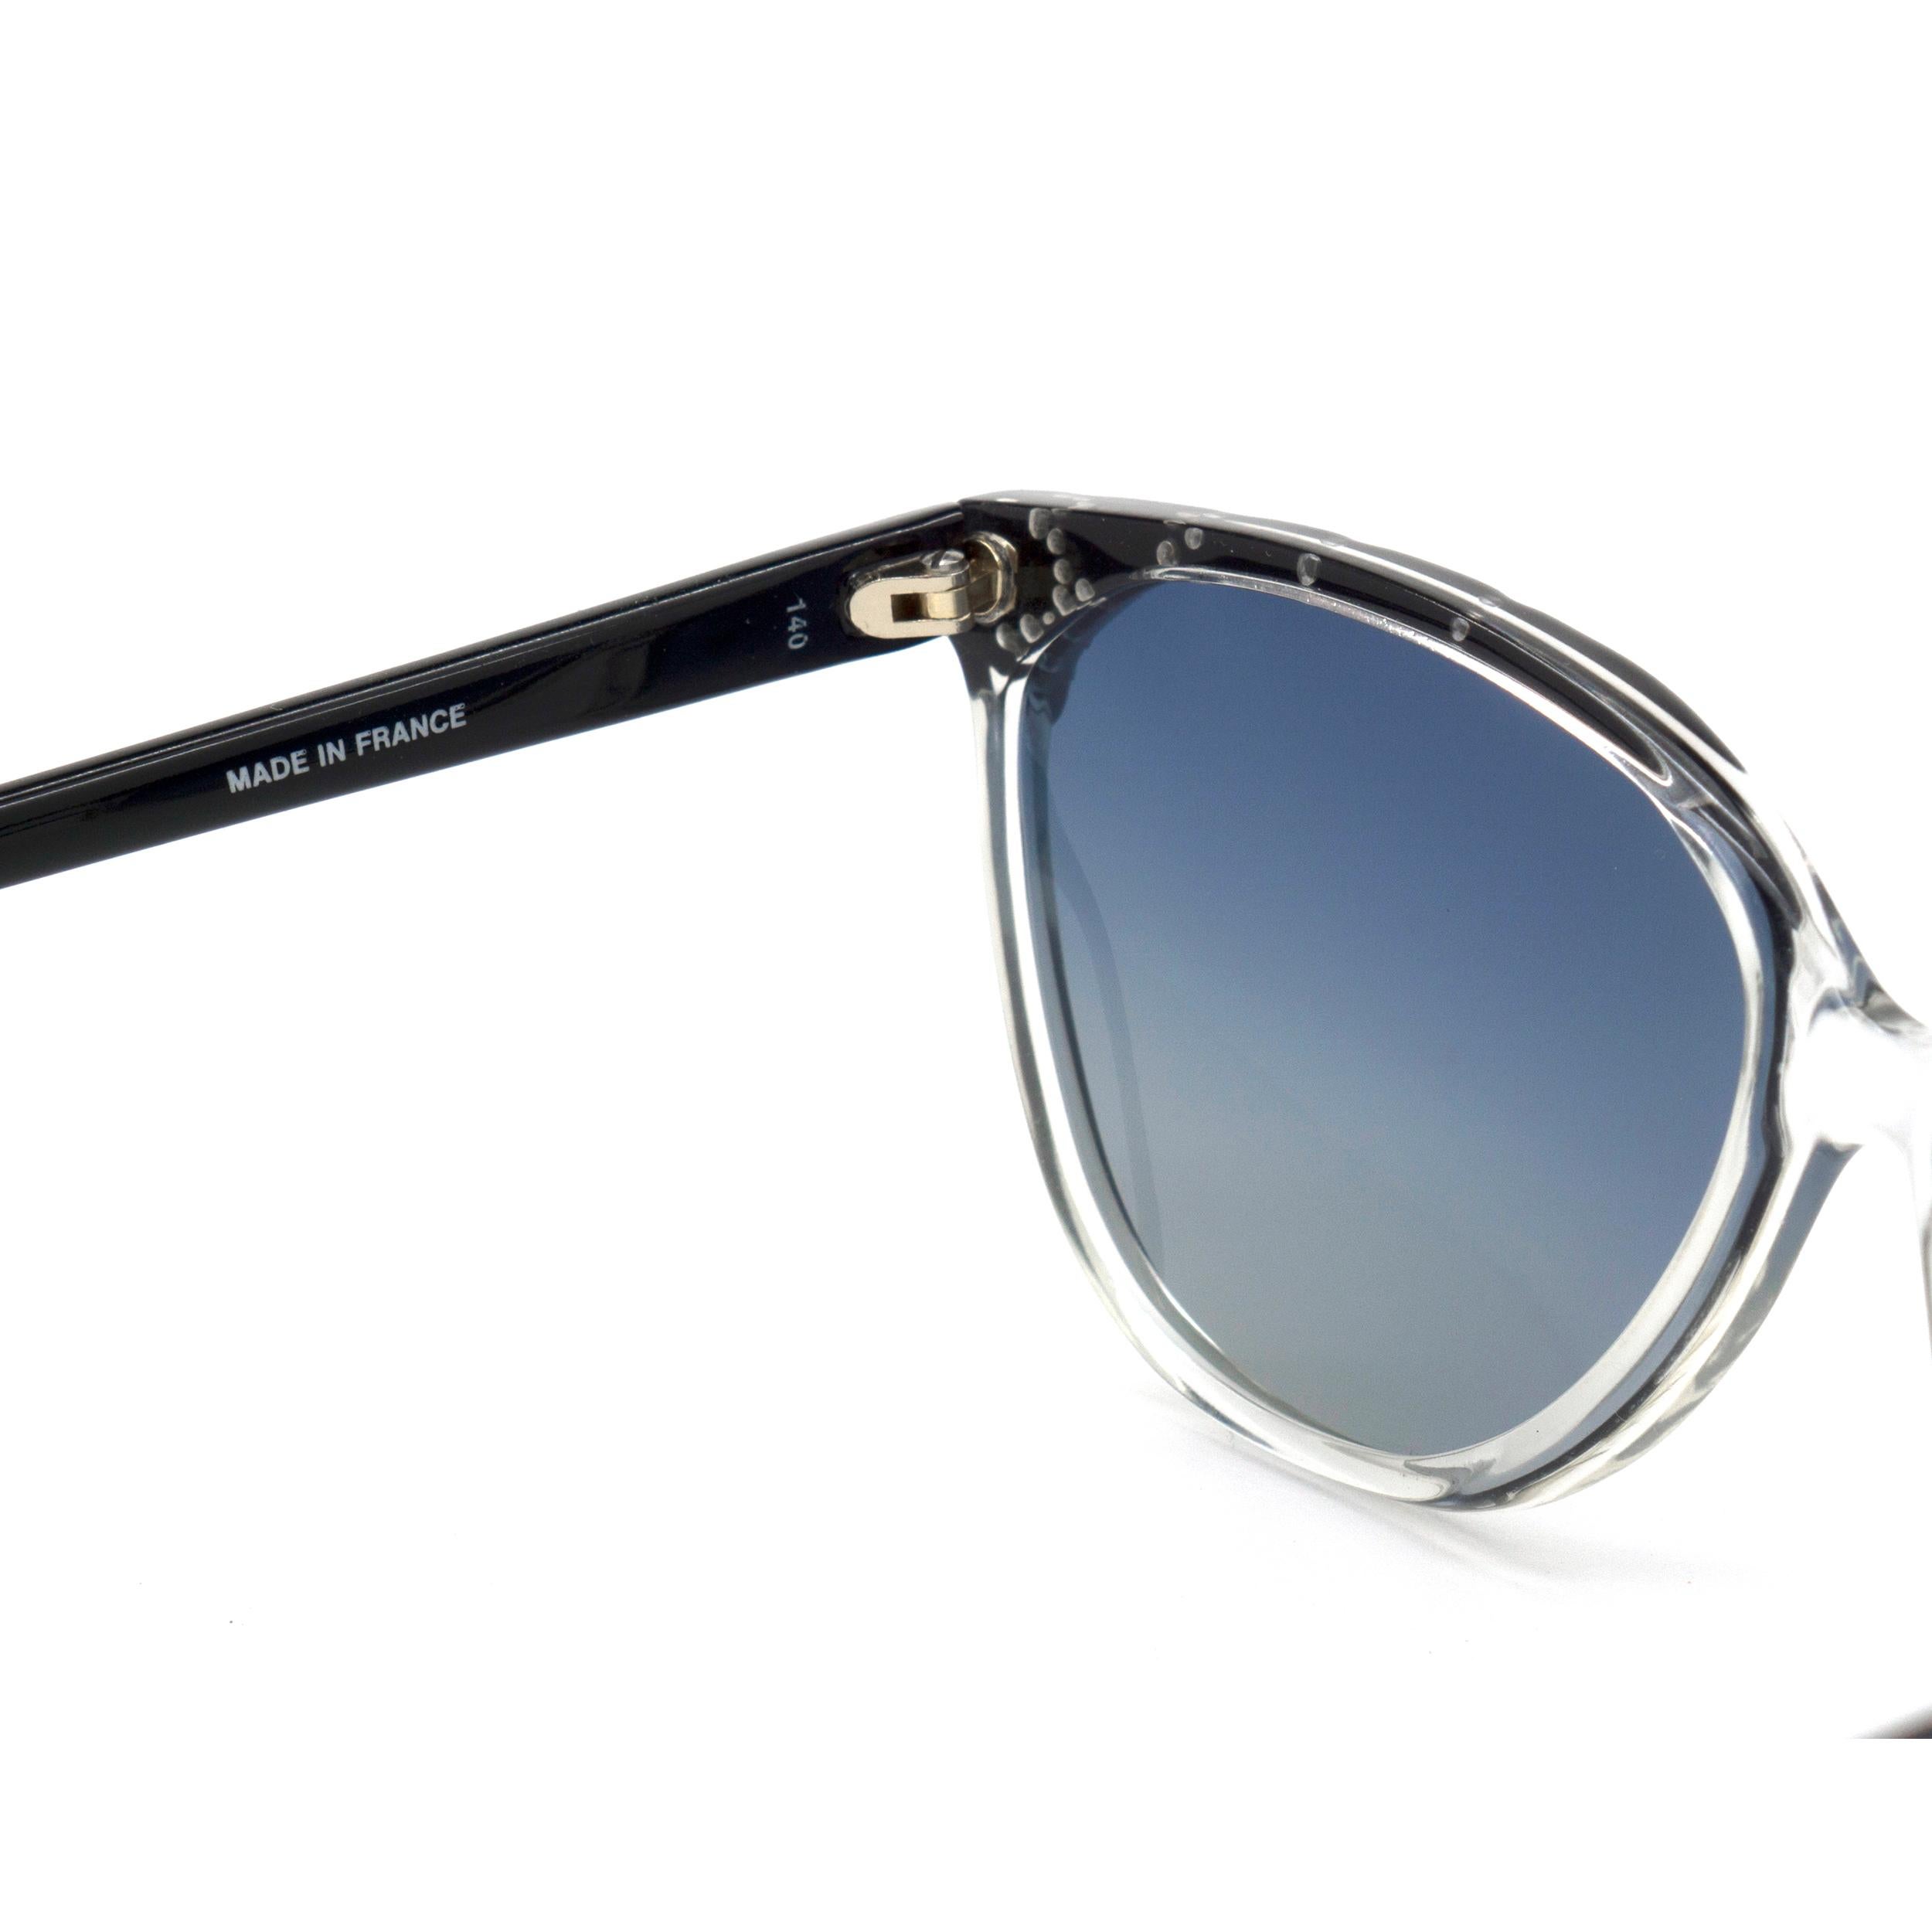 Guy Laroche 80s vintage sunglasses In New Condition For Sale In Santa Clarita, CA